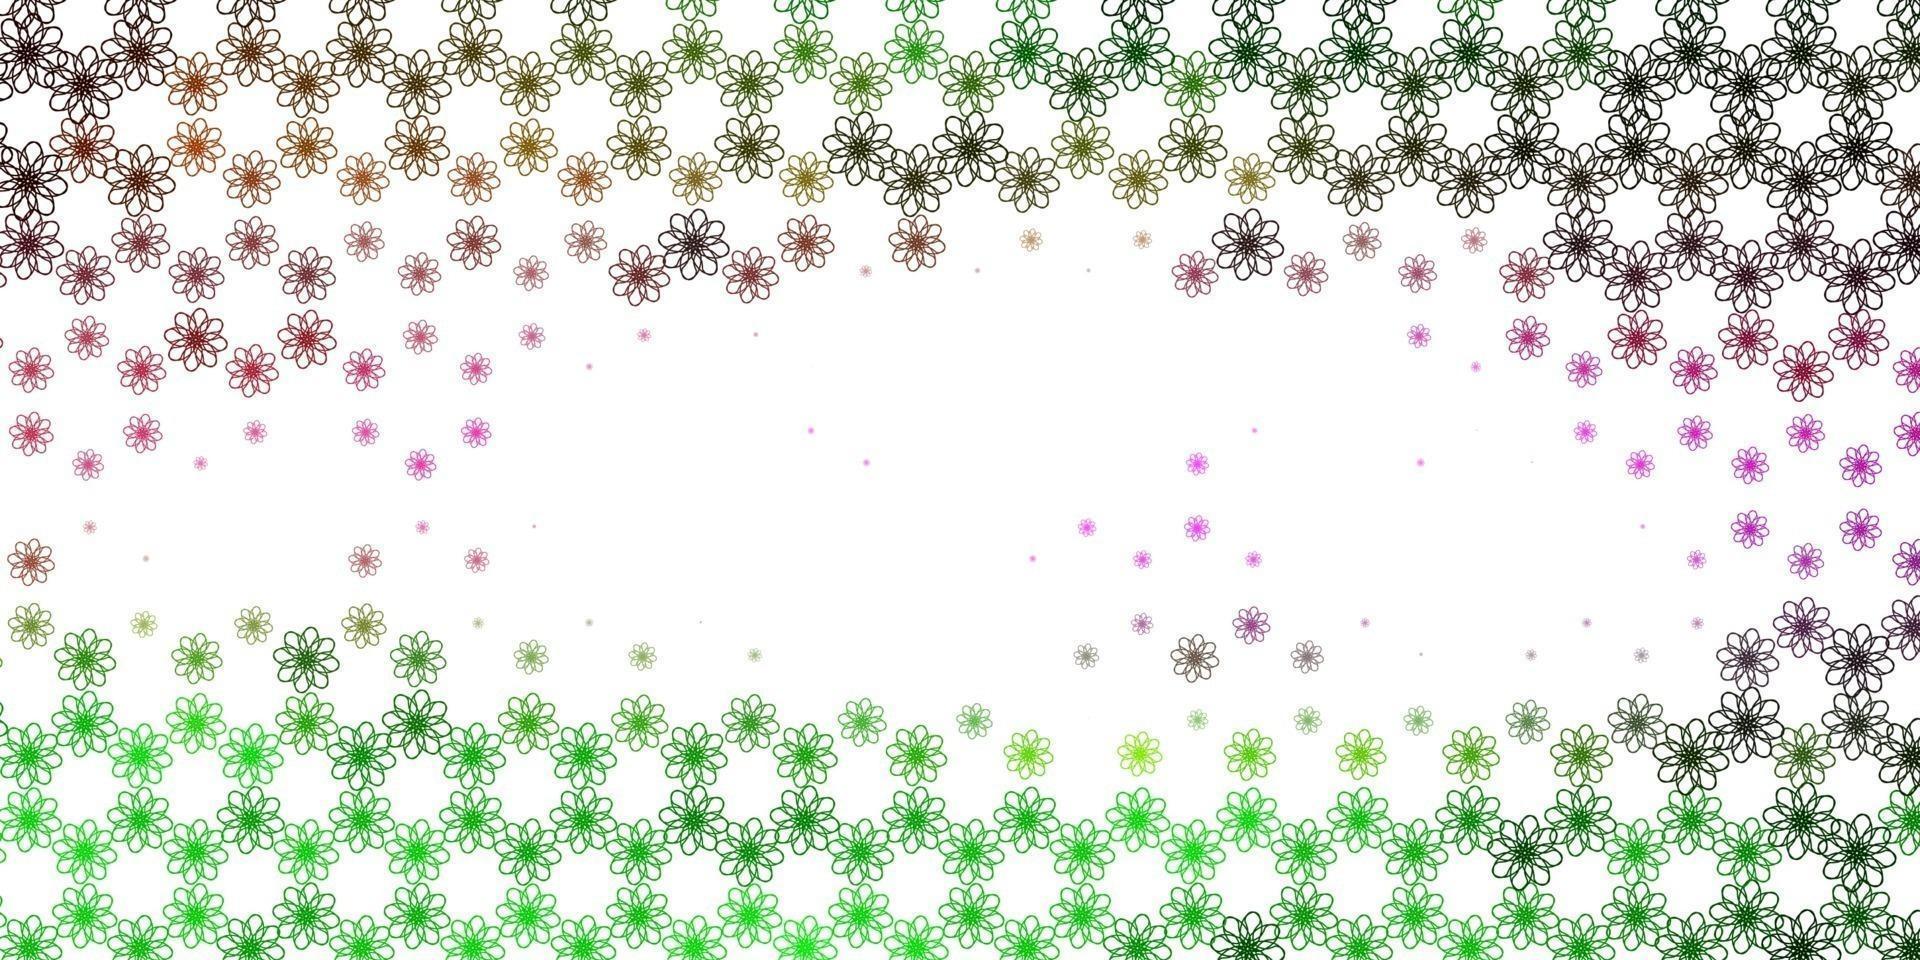 patrón de vector rosa claro, verde con líneas torcidas.